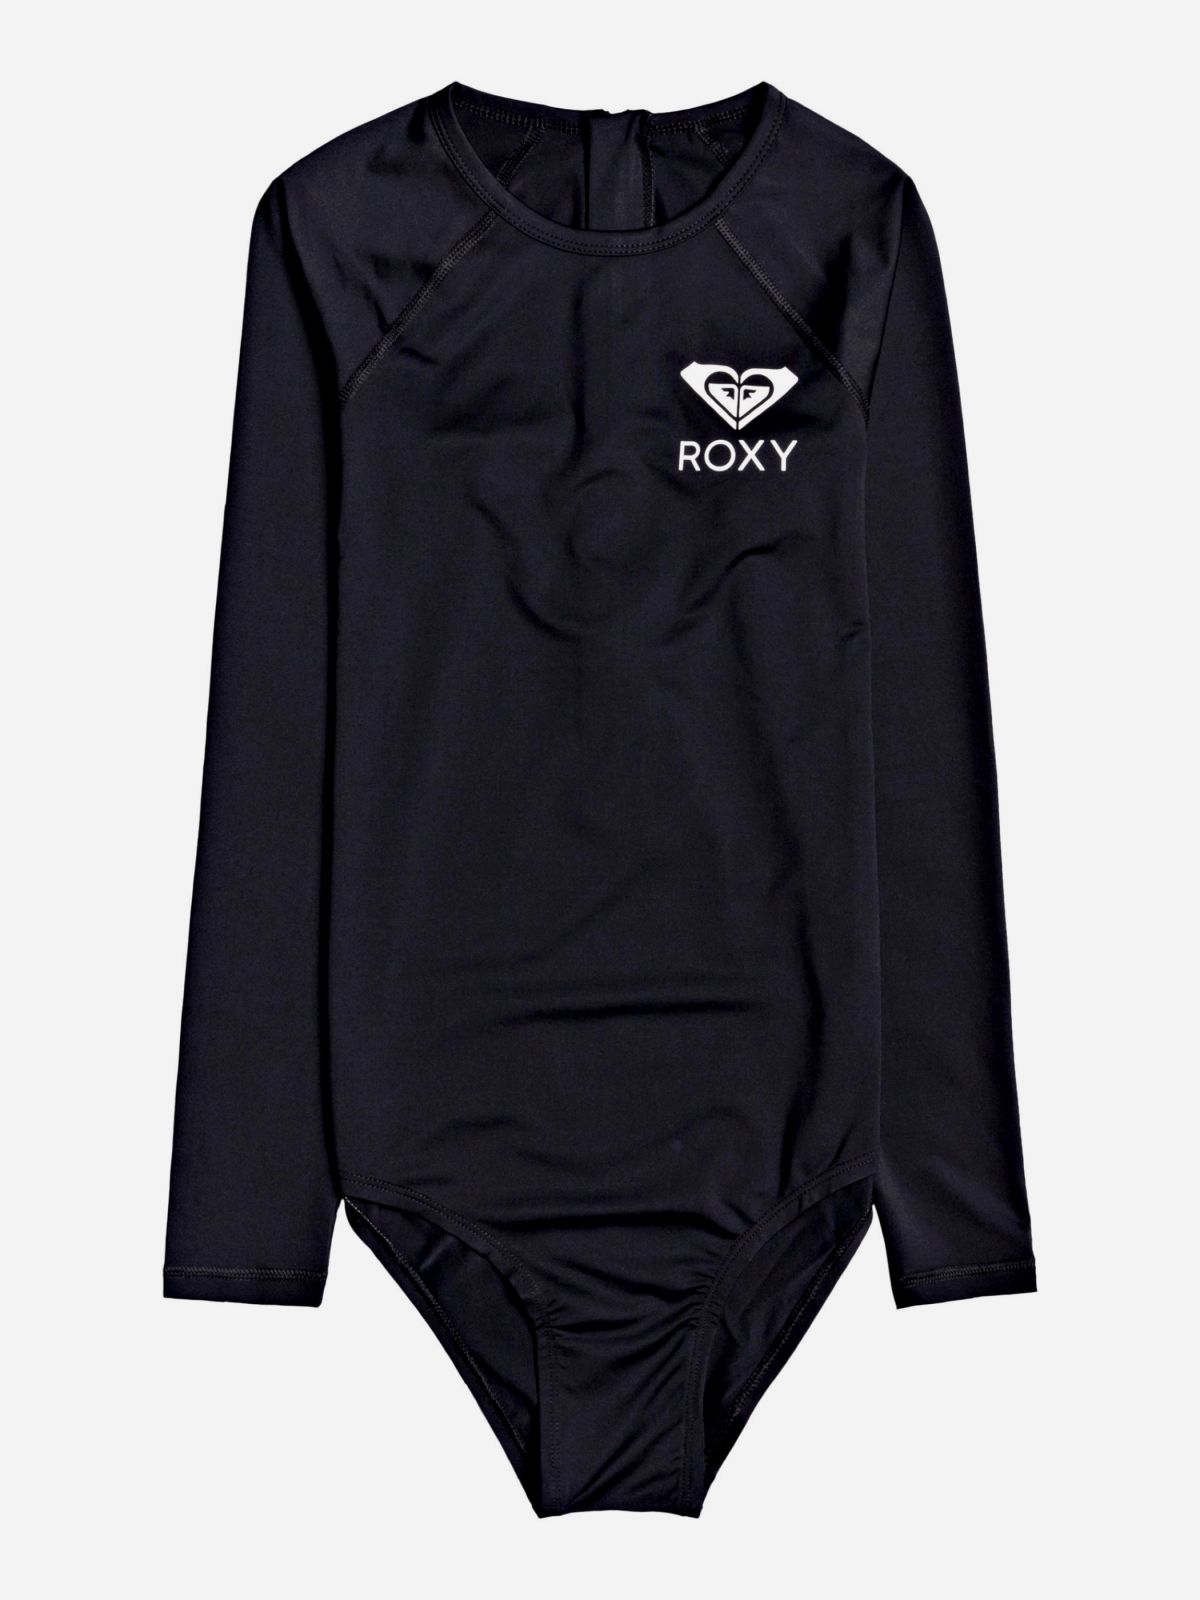  בגד ים שלם עם לוגו של ROXY